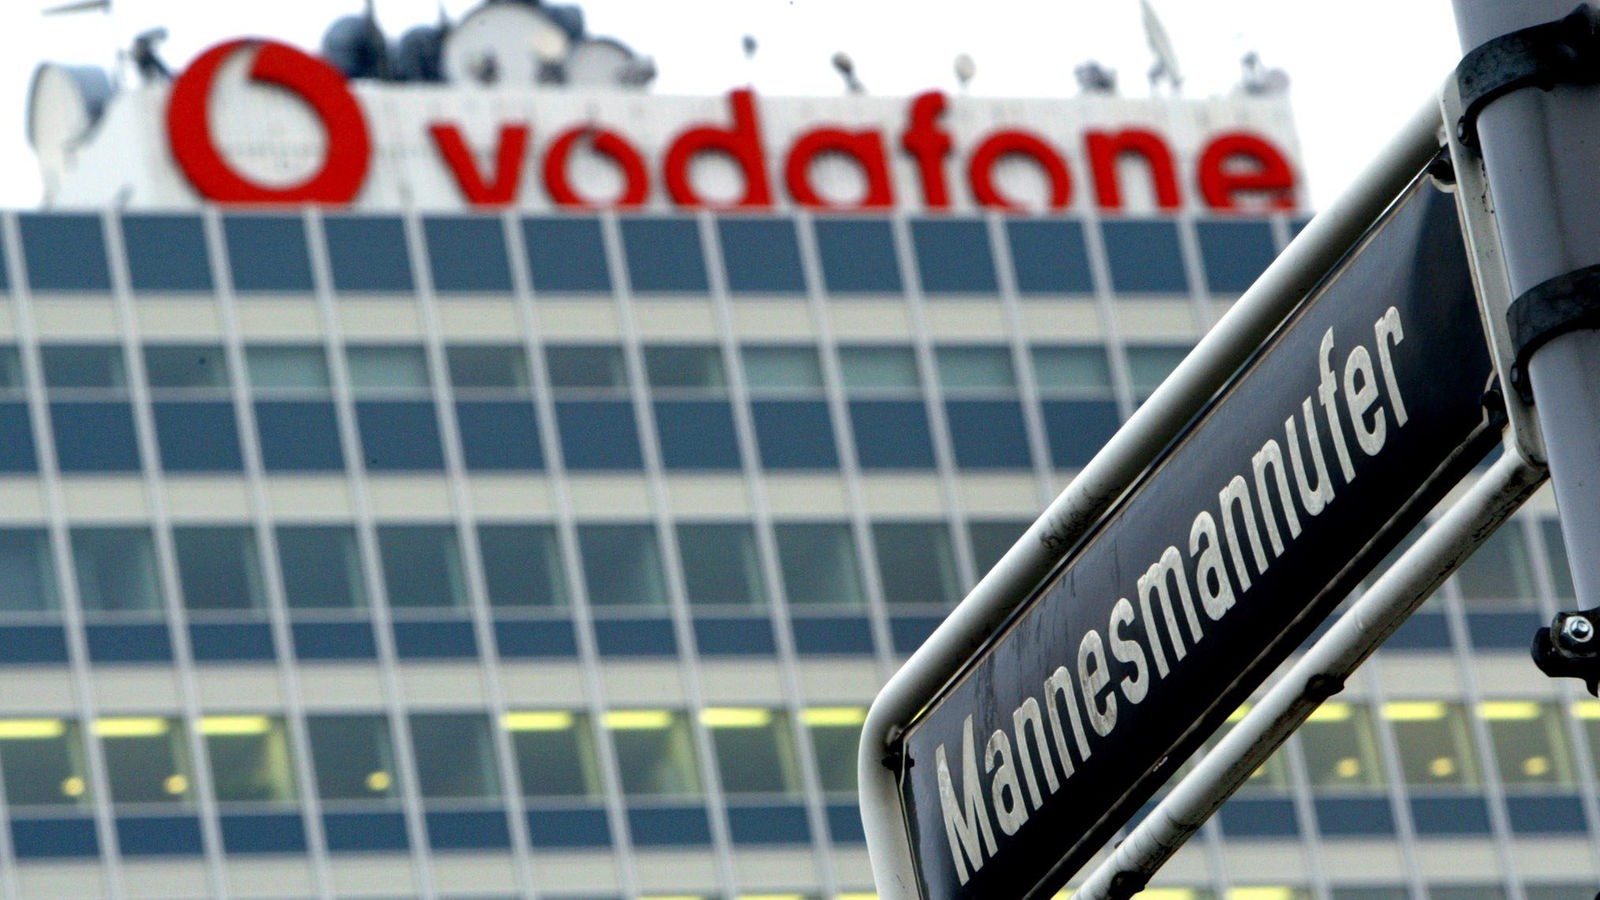 Ein Straßenschild mit dem Namen "Mannesmannufer" vor der ehemaligen Konzernzentrale, jetzt mit "Vodafone"-Schriftzug